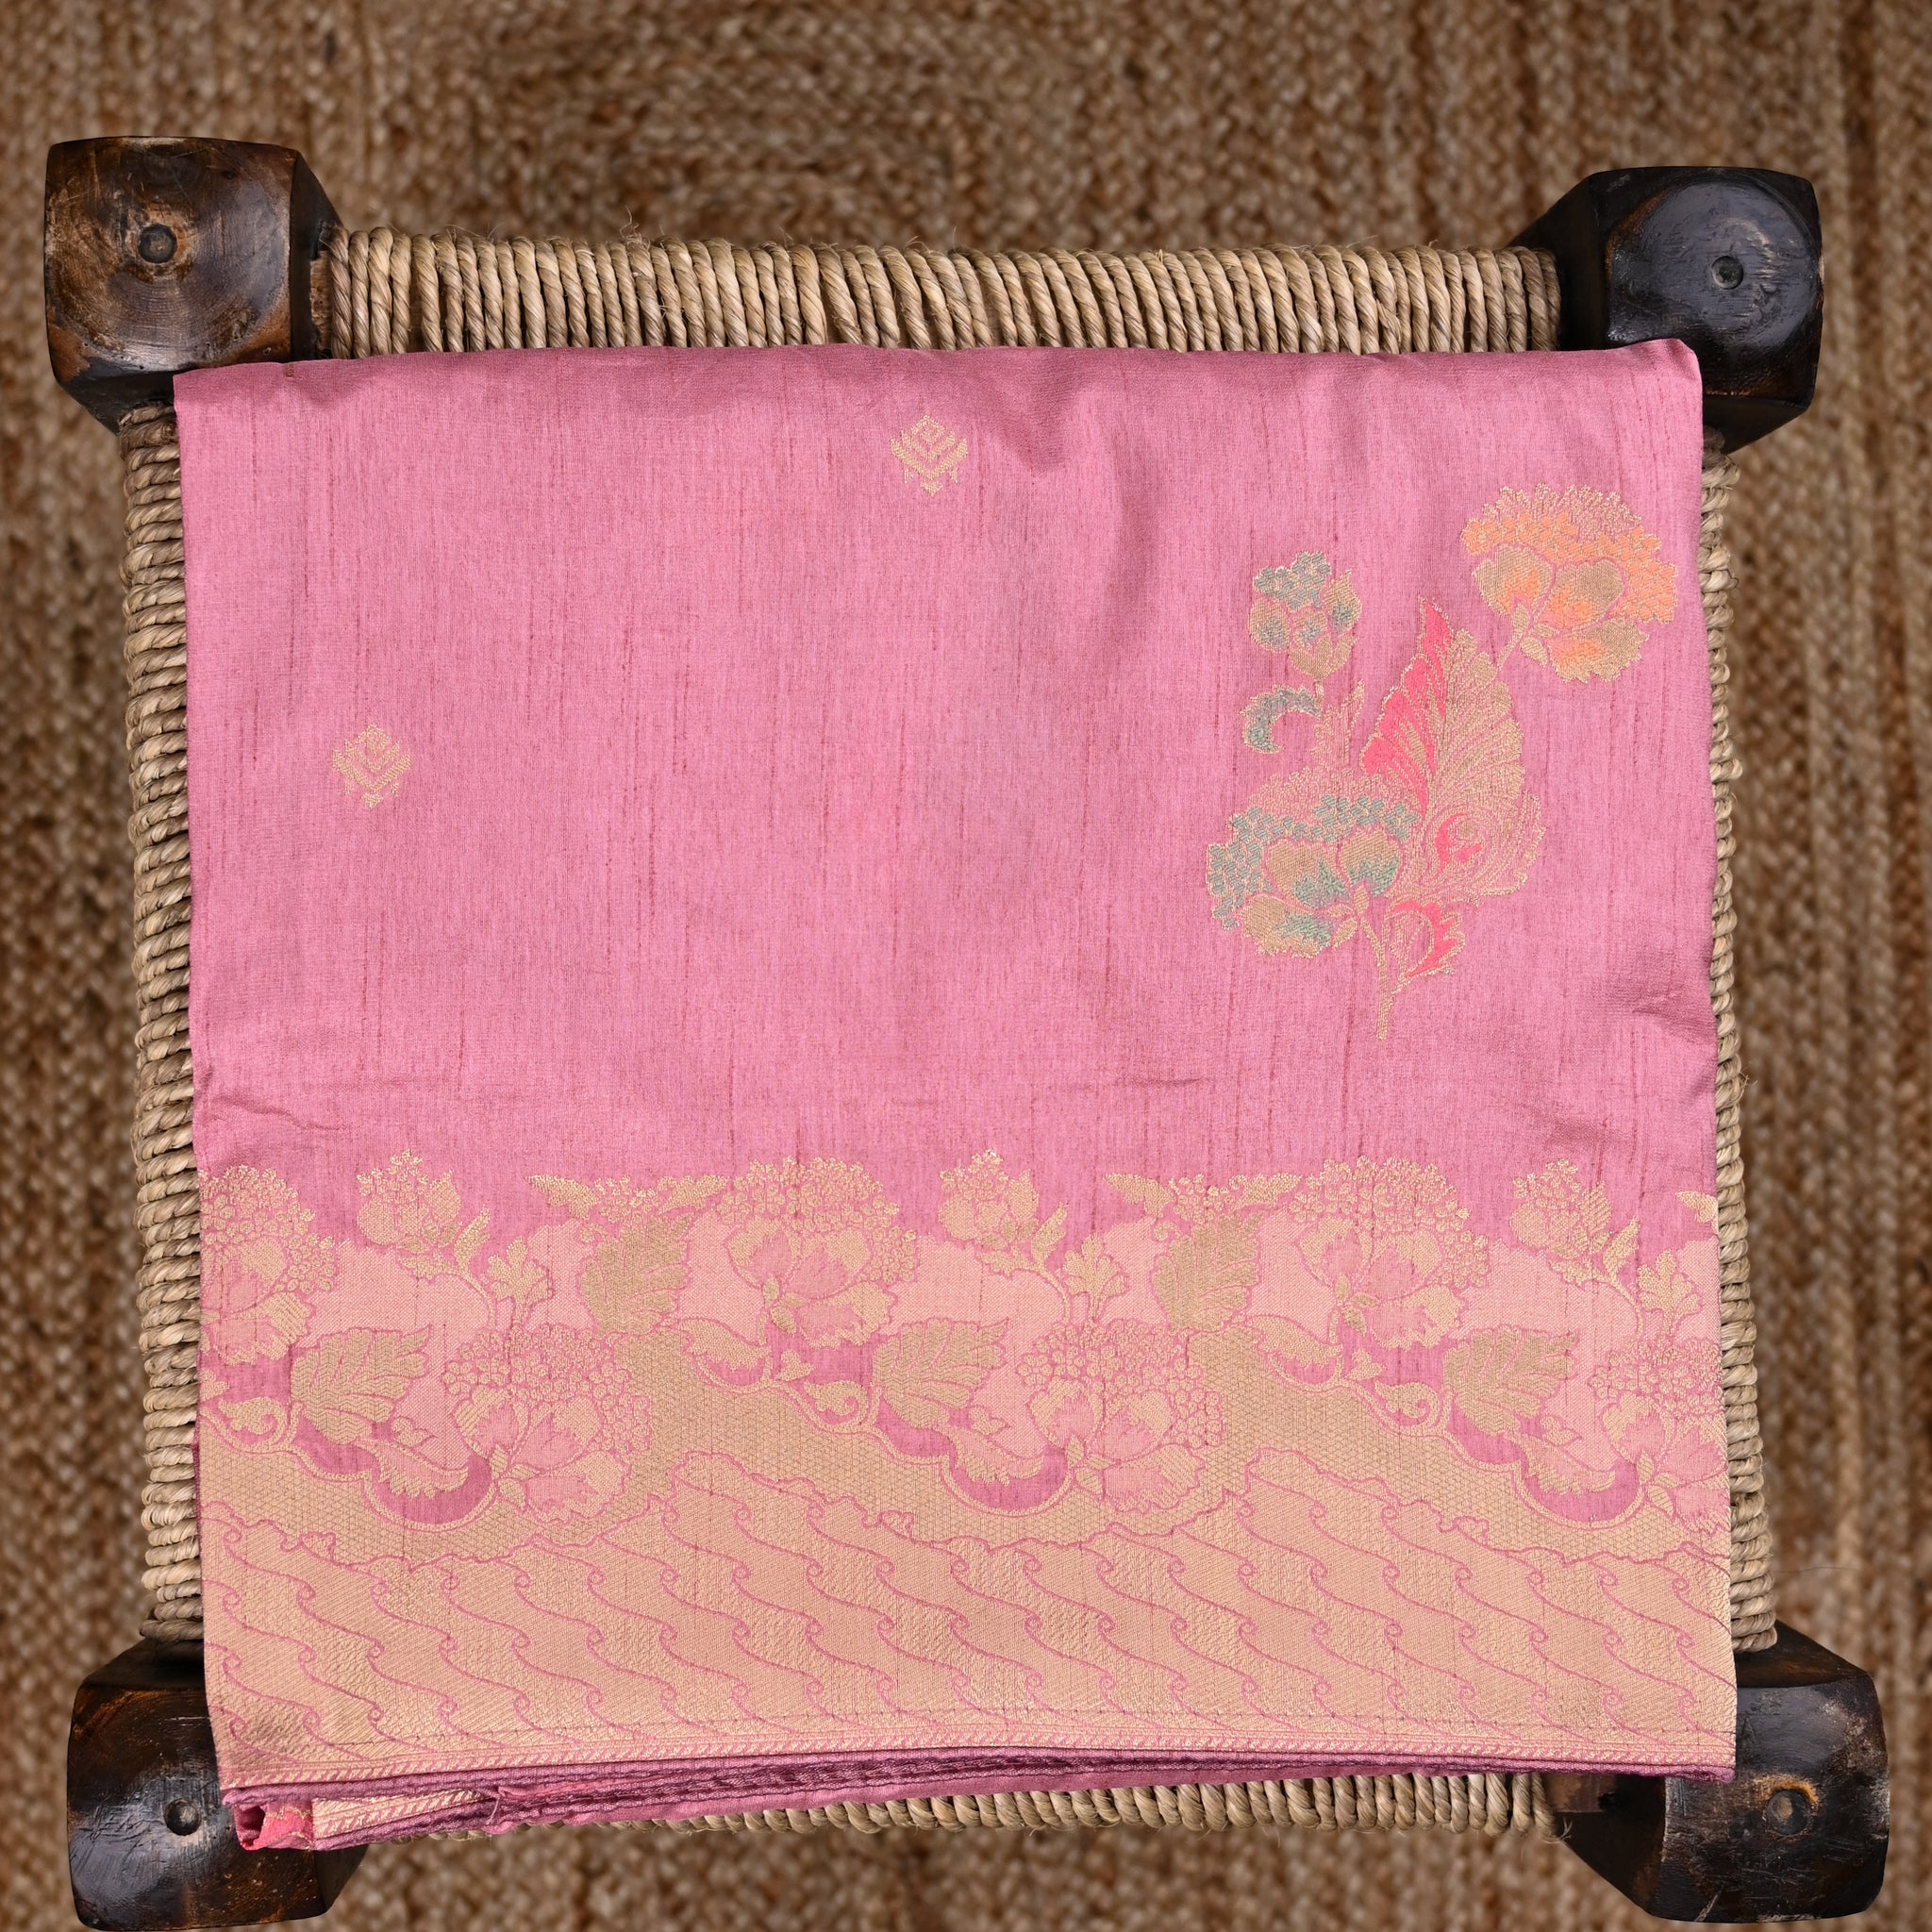 Dola silk saree baby pink color with allover meenakari motives, rich pallu, small zari border and running plain blouse.